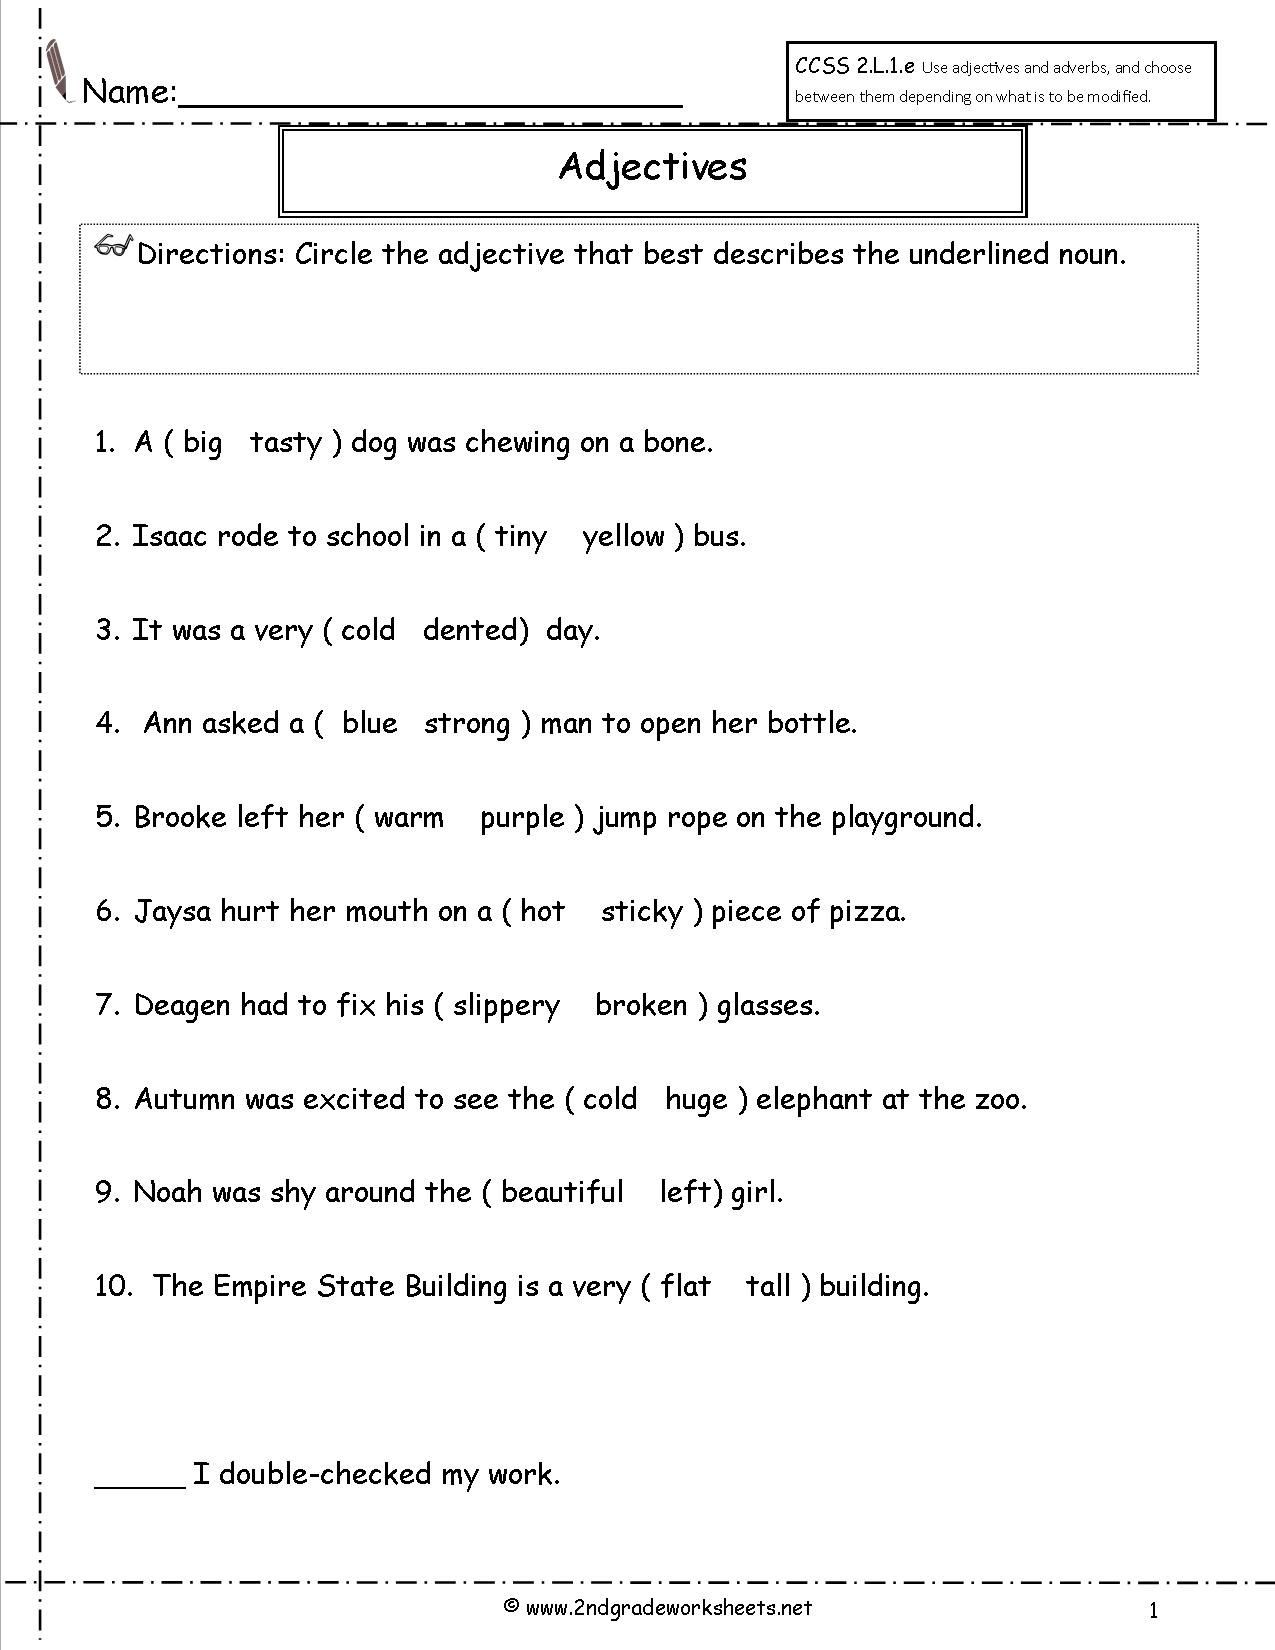 Adjectives Worksheets for Grade 1 Adjectives Worksheet